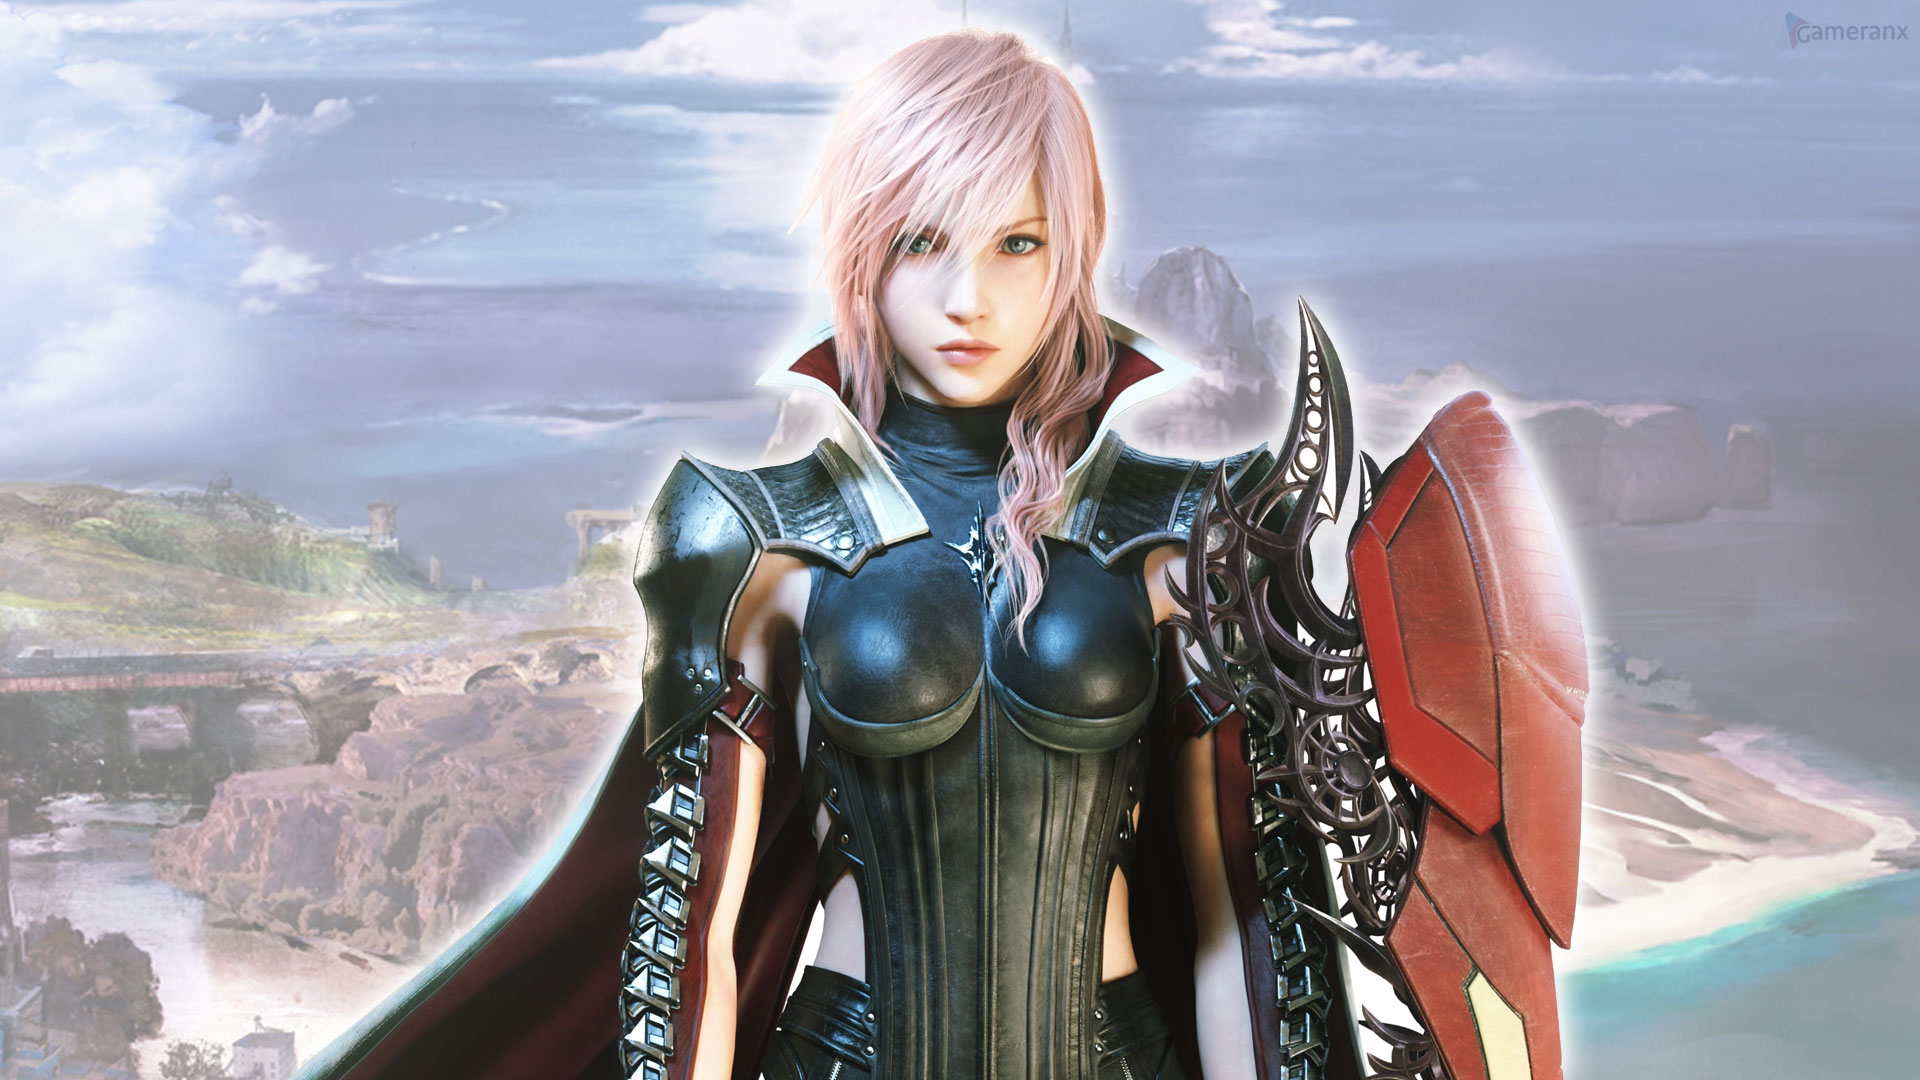 Lightning Returns Final Fantasy Xiii 720p Wallpaper Gameranx